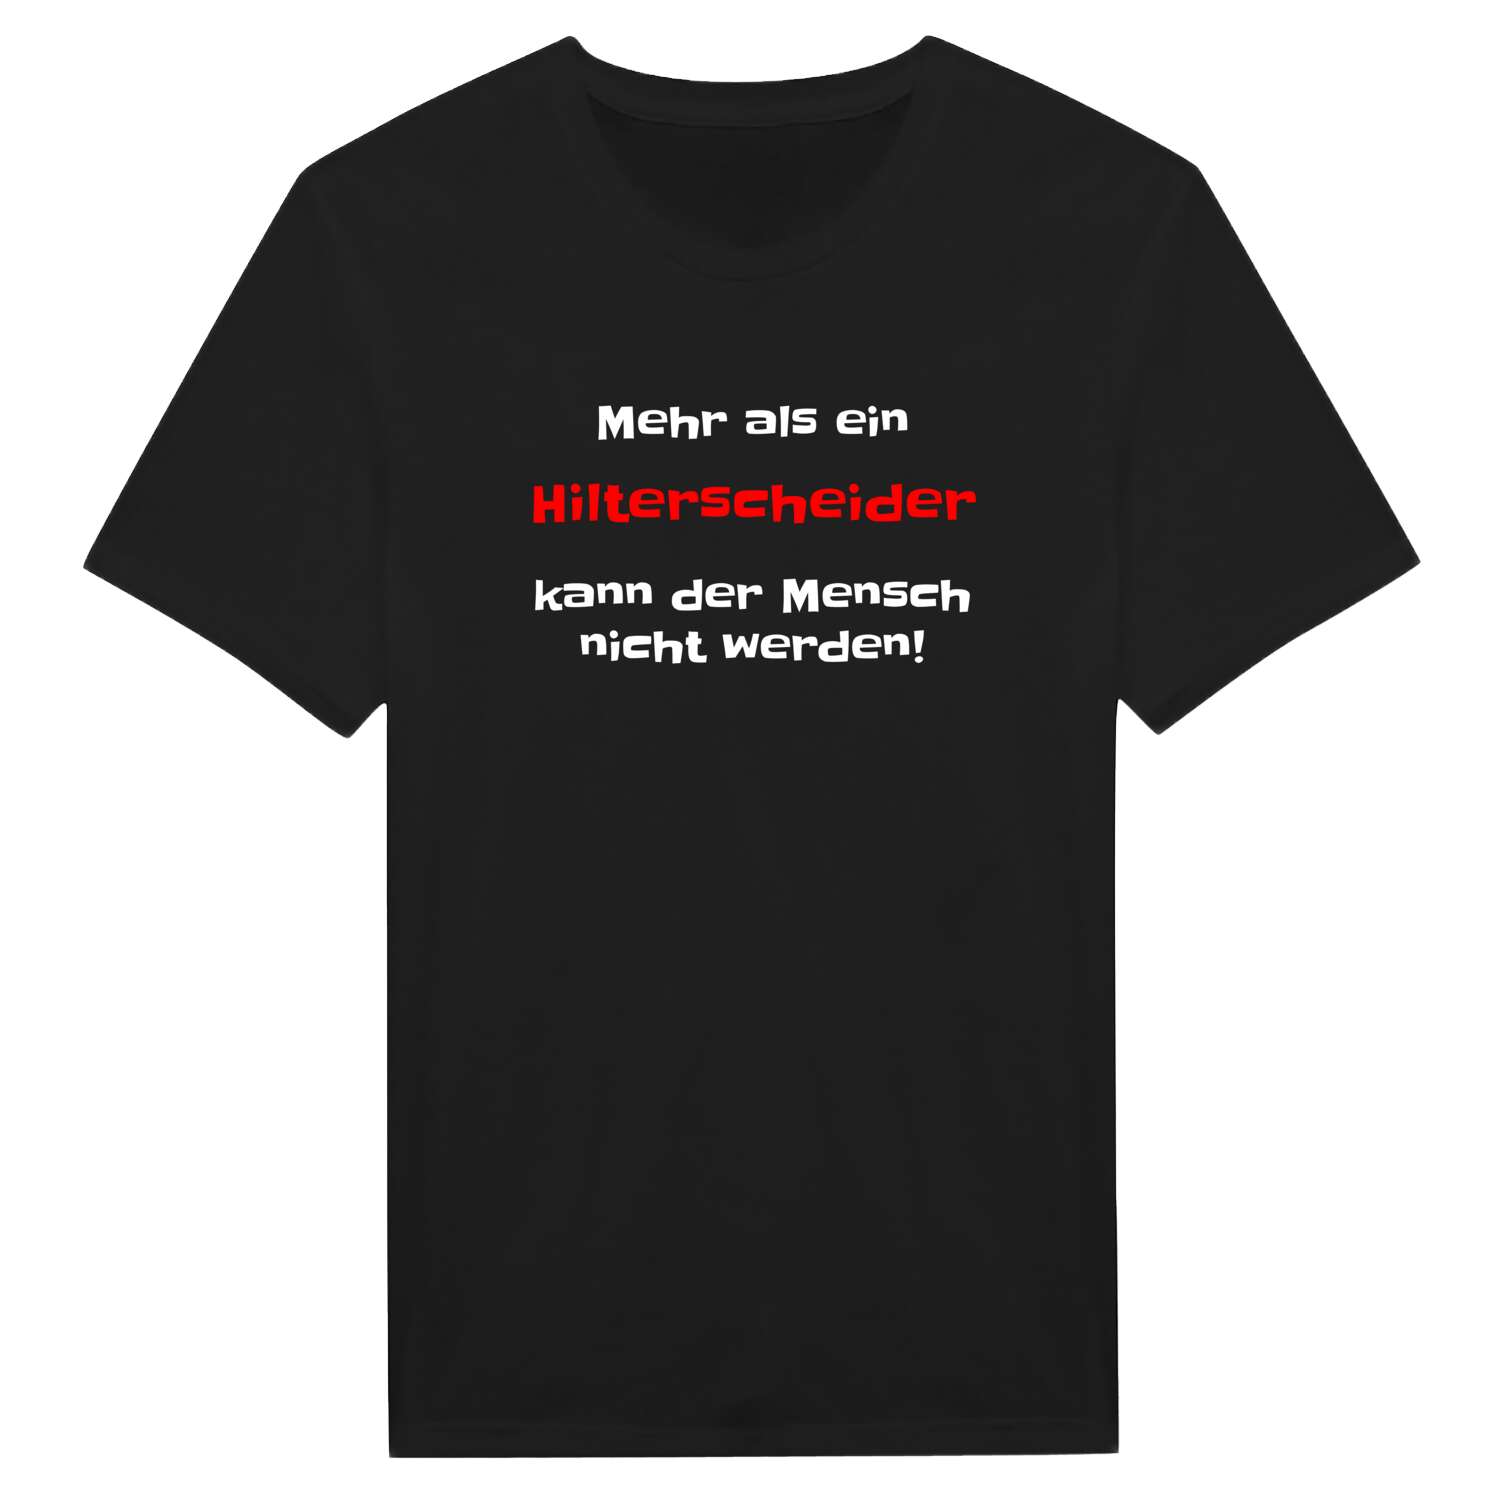 Hilterscheid T-Shirt »Mehr als ein«